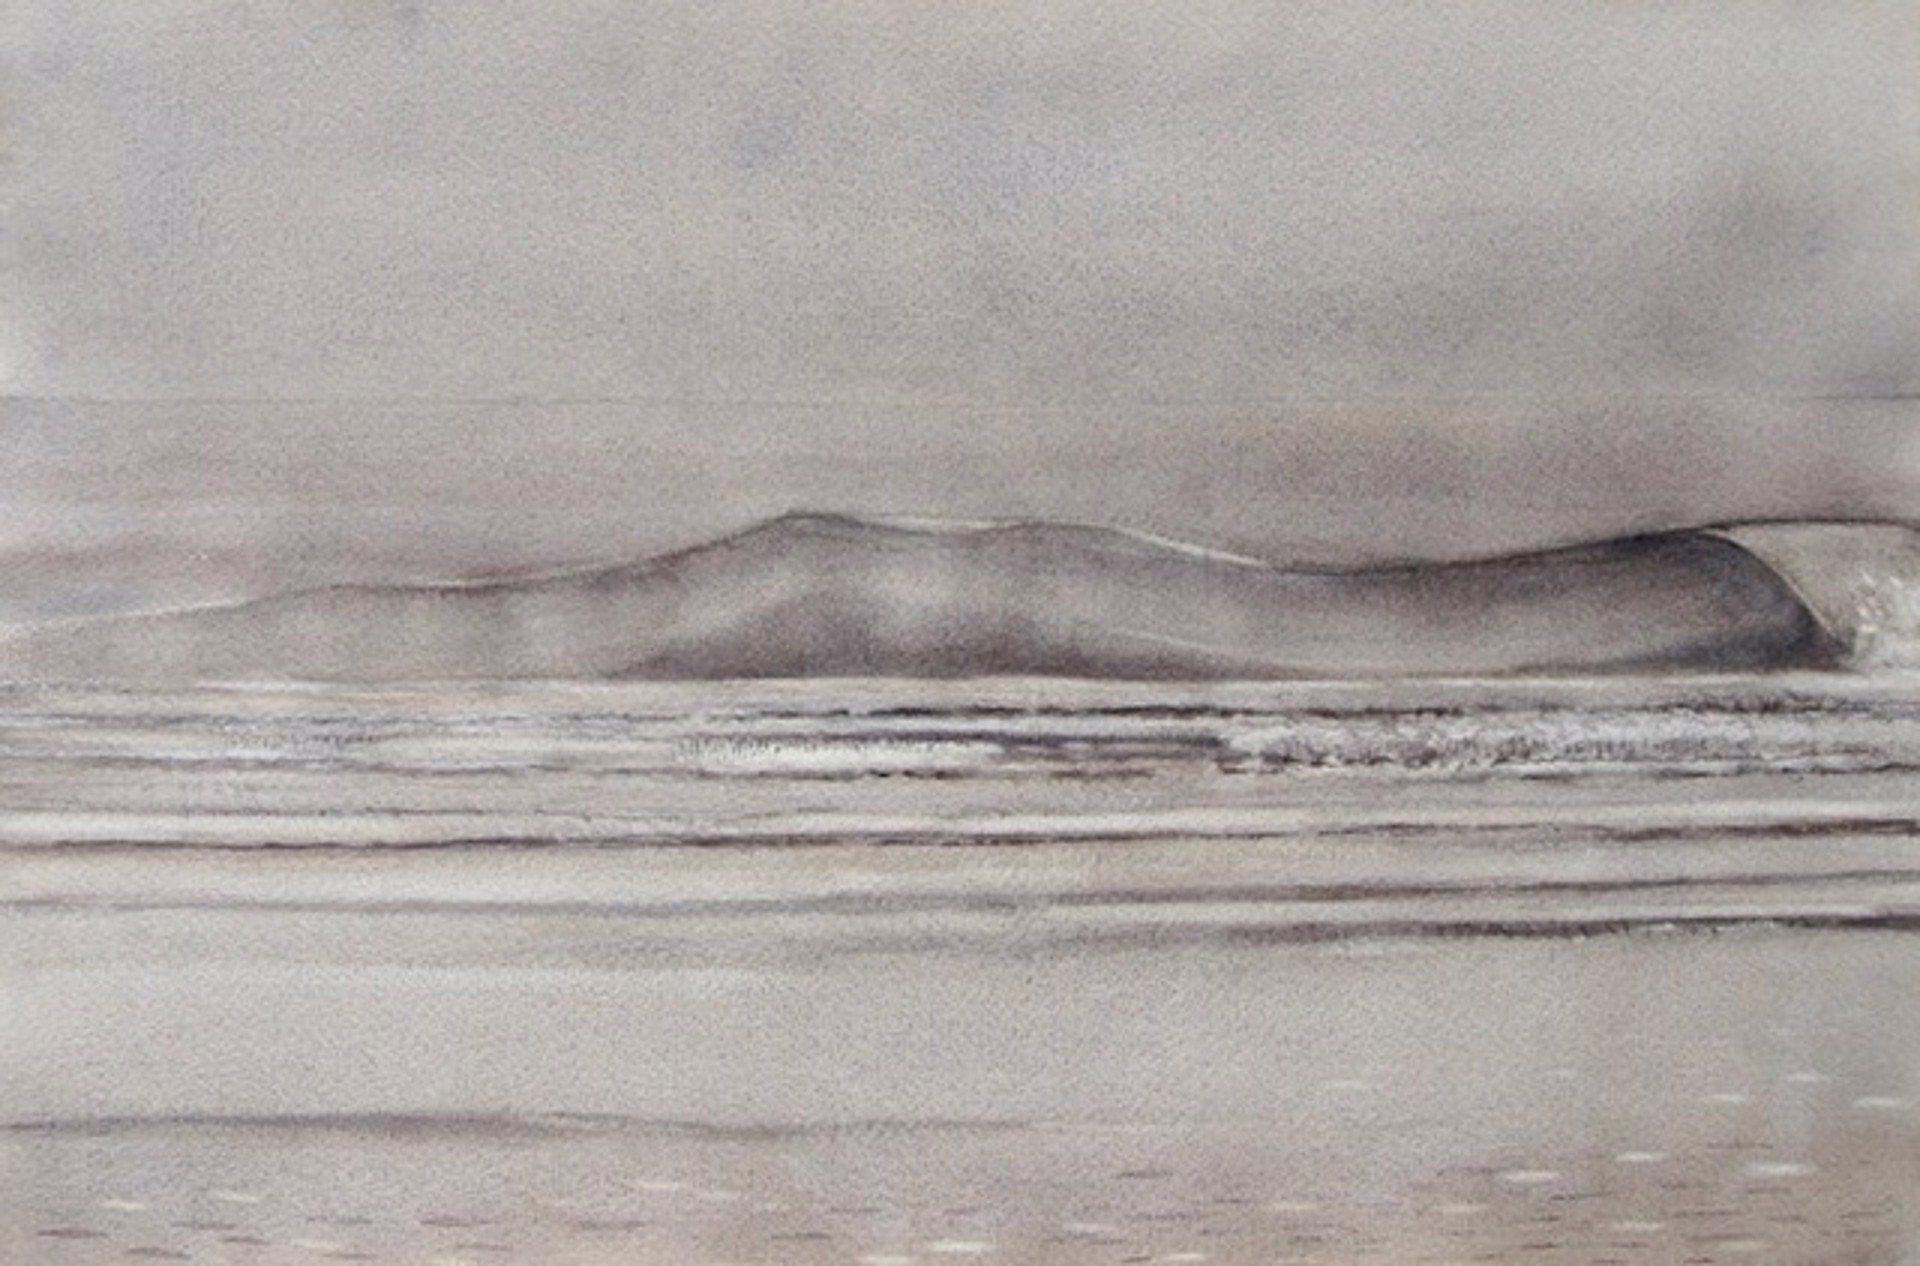 Waves in the Mist by Ken Mazzu